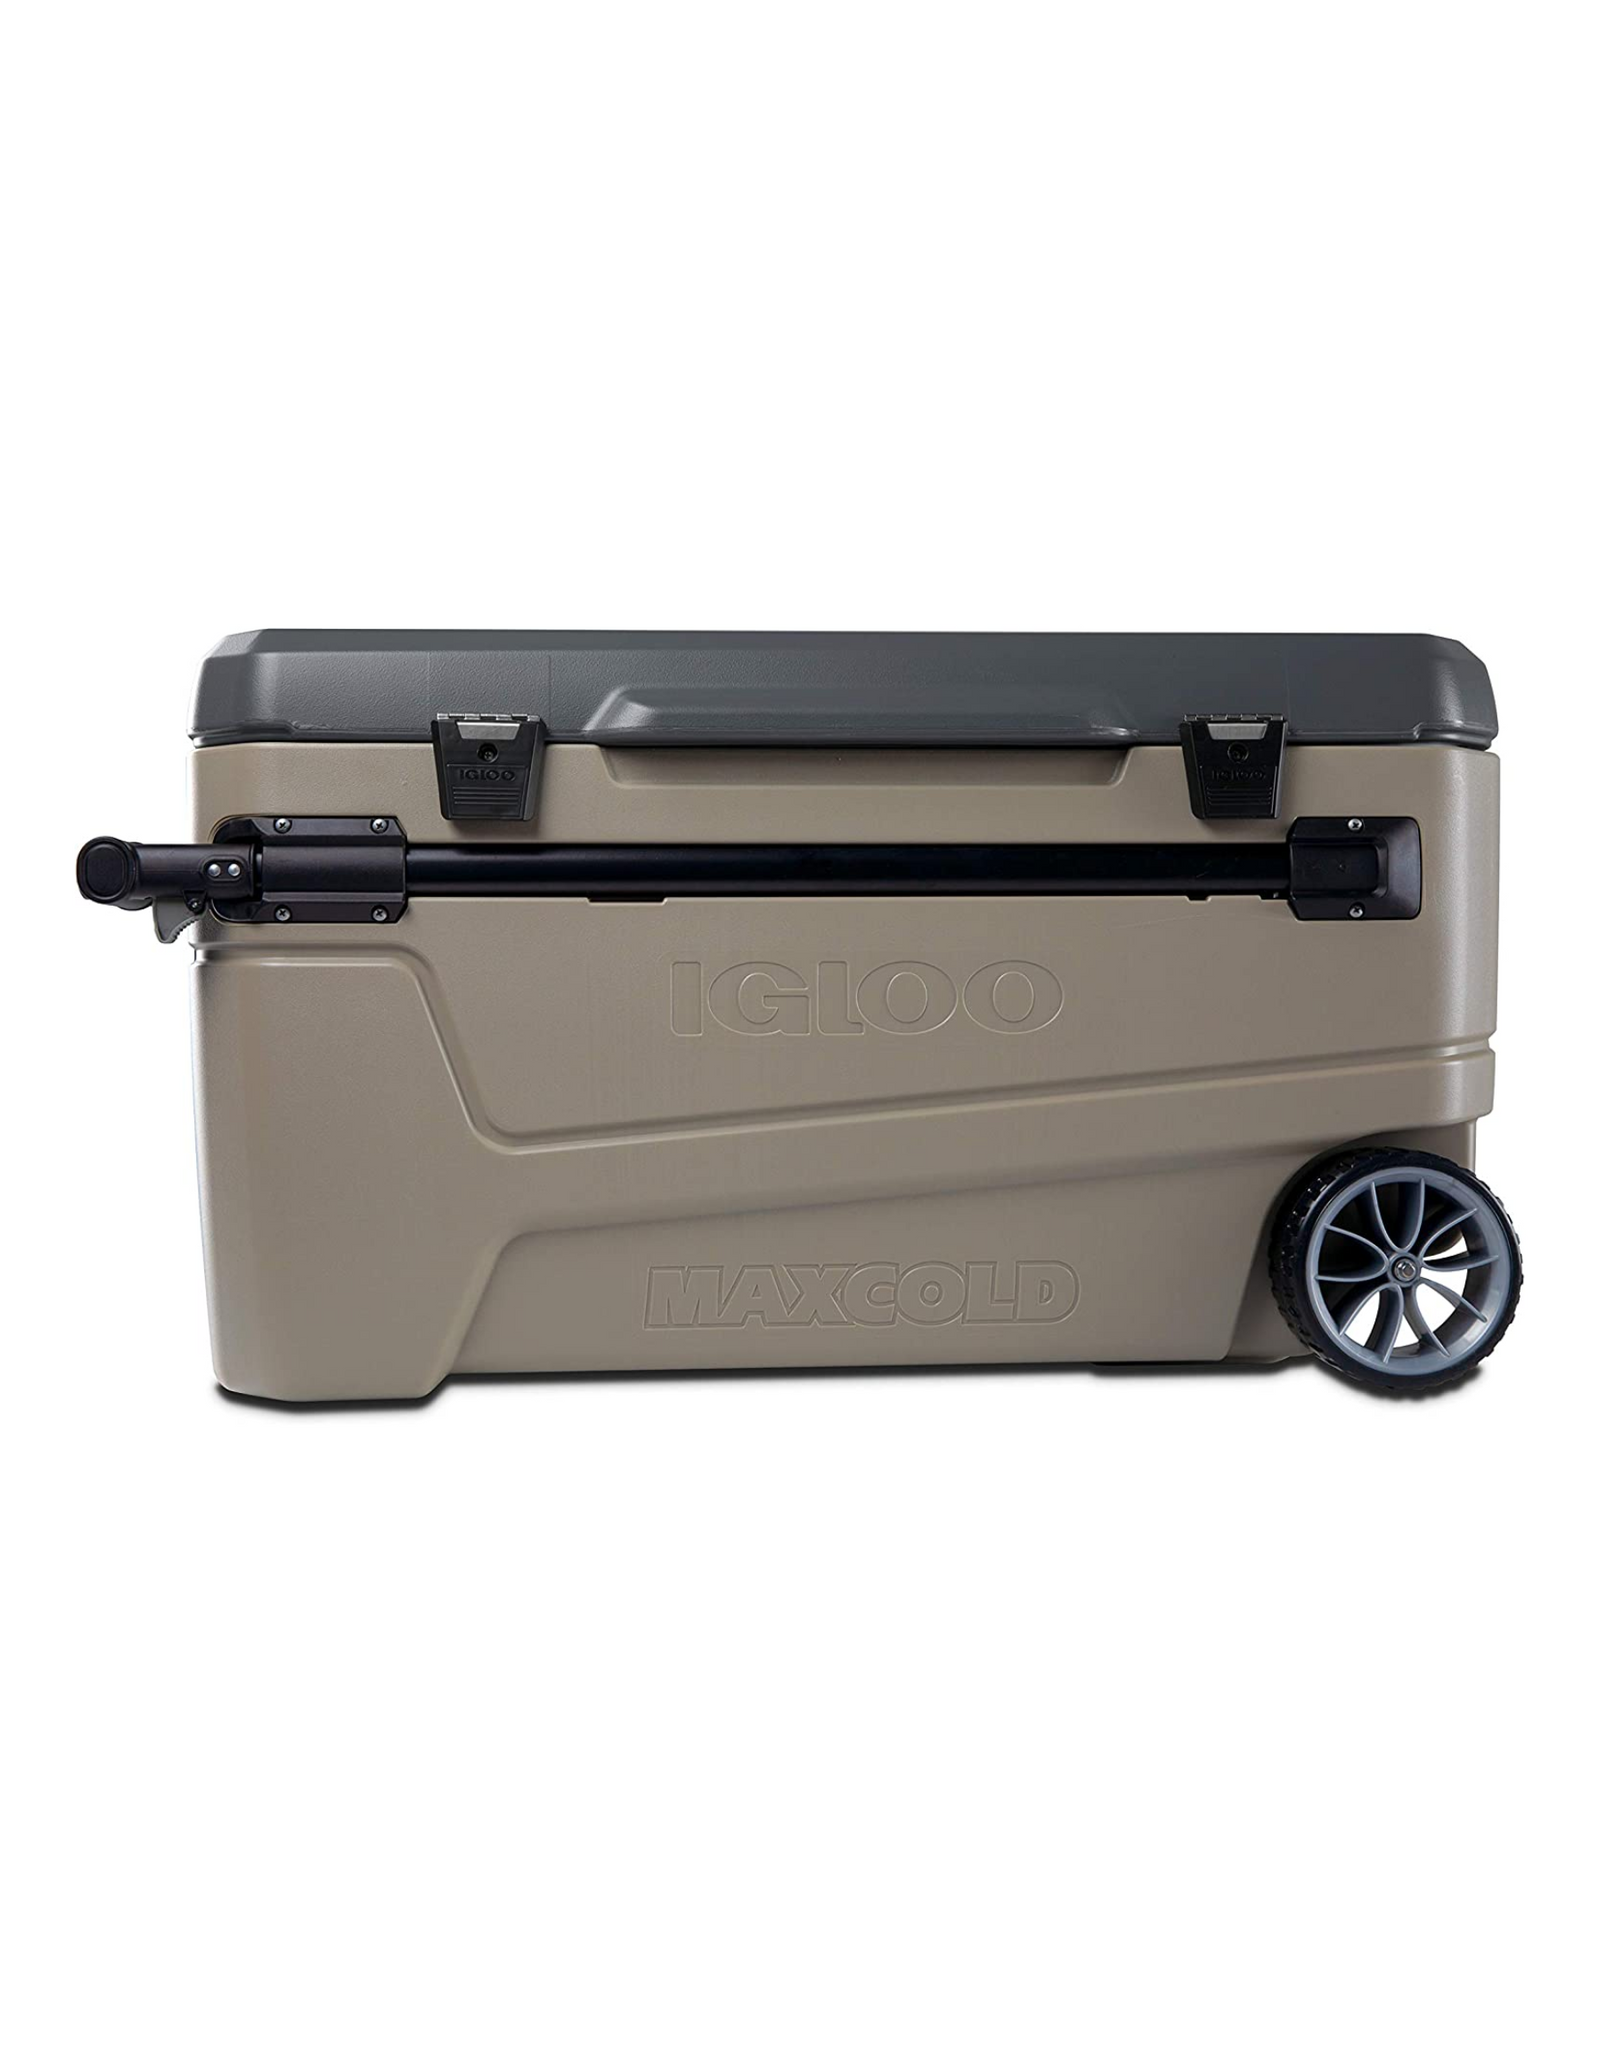 Igloo Sportsman 30-150 Qt, Hardsided Coolers, Heavy-Duty, High Performance, 110 Qt Capacity, Sandstone